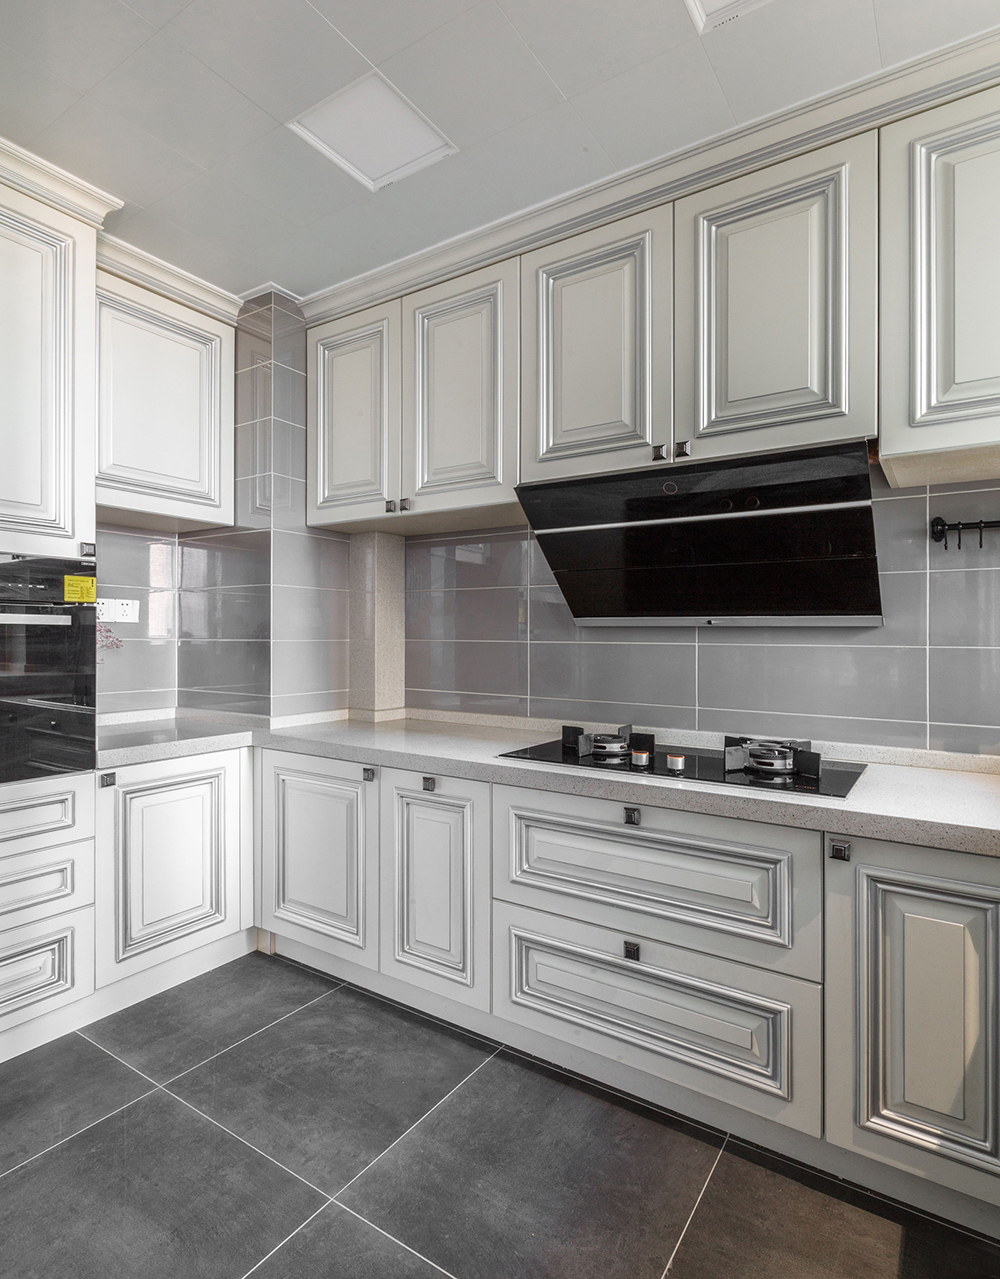 厨房动线设计的很充分，白色橱柜明朗优雅，扩大了空间感，整体配色颜值温润。